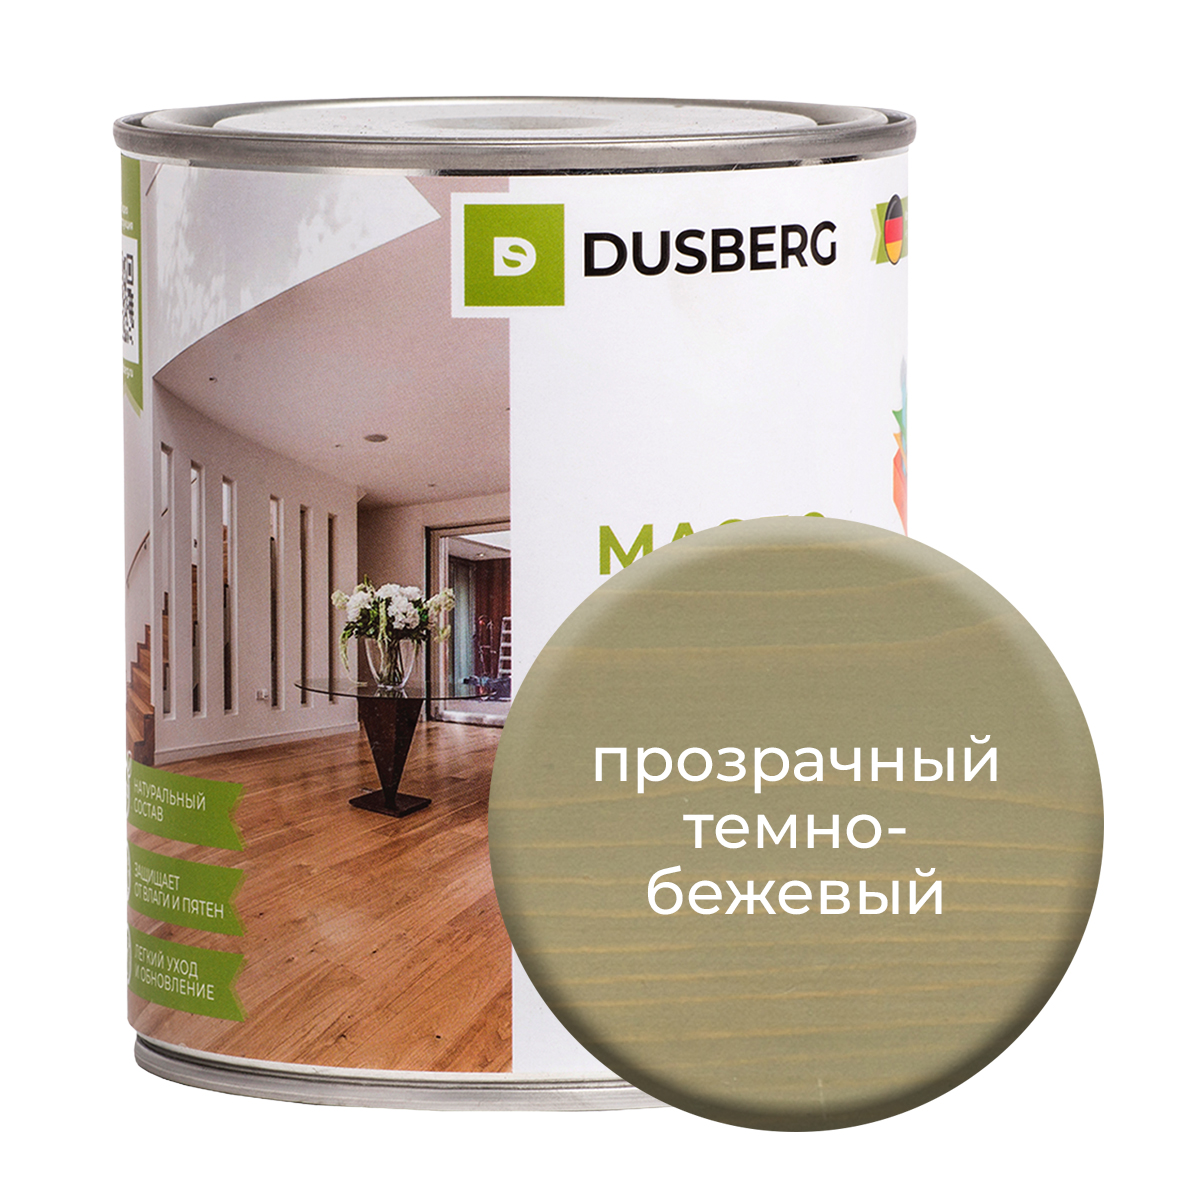 Масло Dusberg для стен на бесцветной основе, 750 мл Прозрачный темно-бежевый масло dusberg для дерева на бесцветной основе 750 мл палисандр